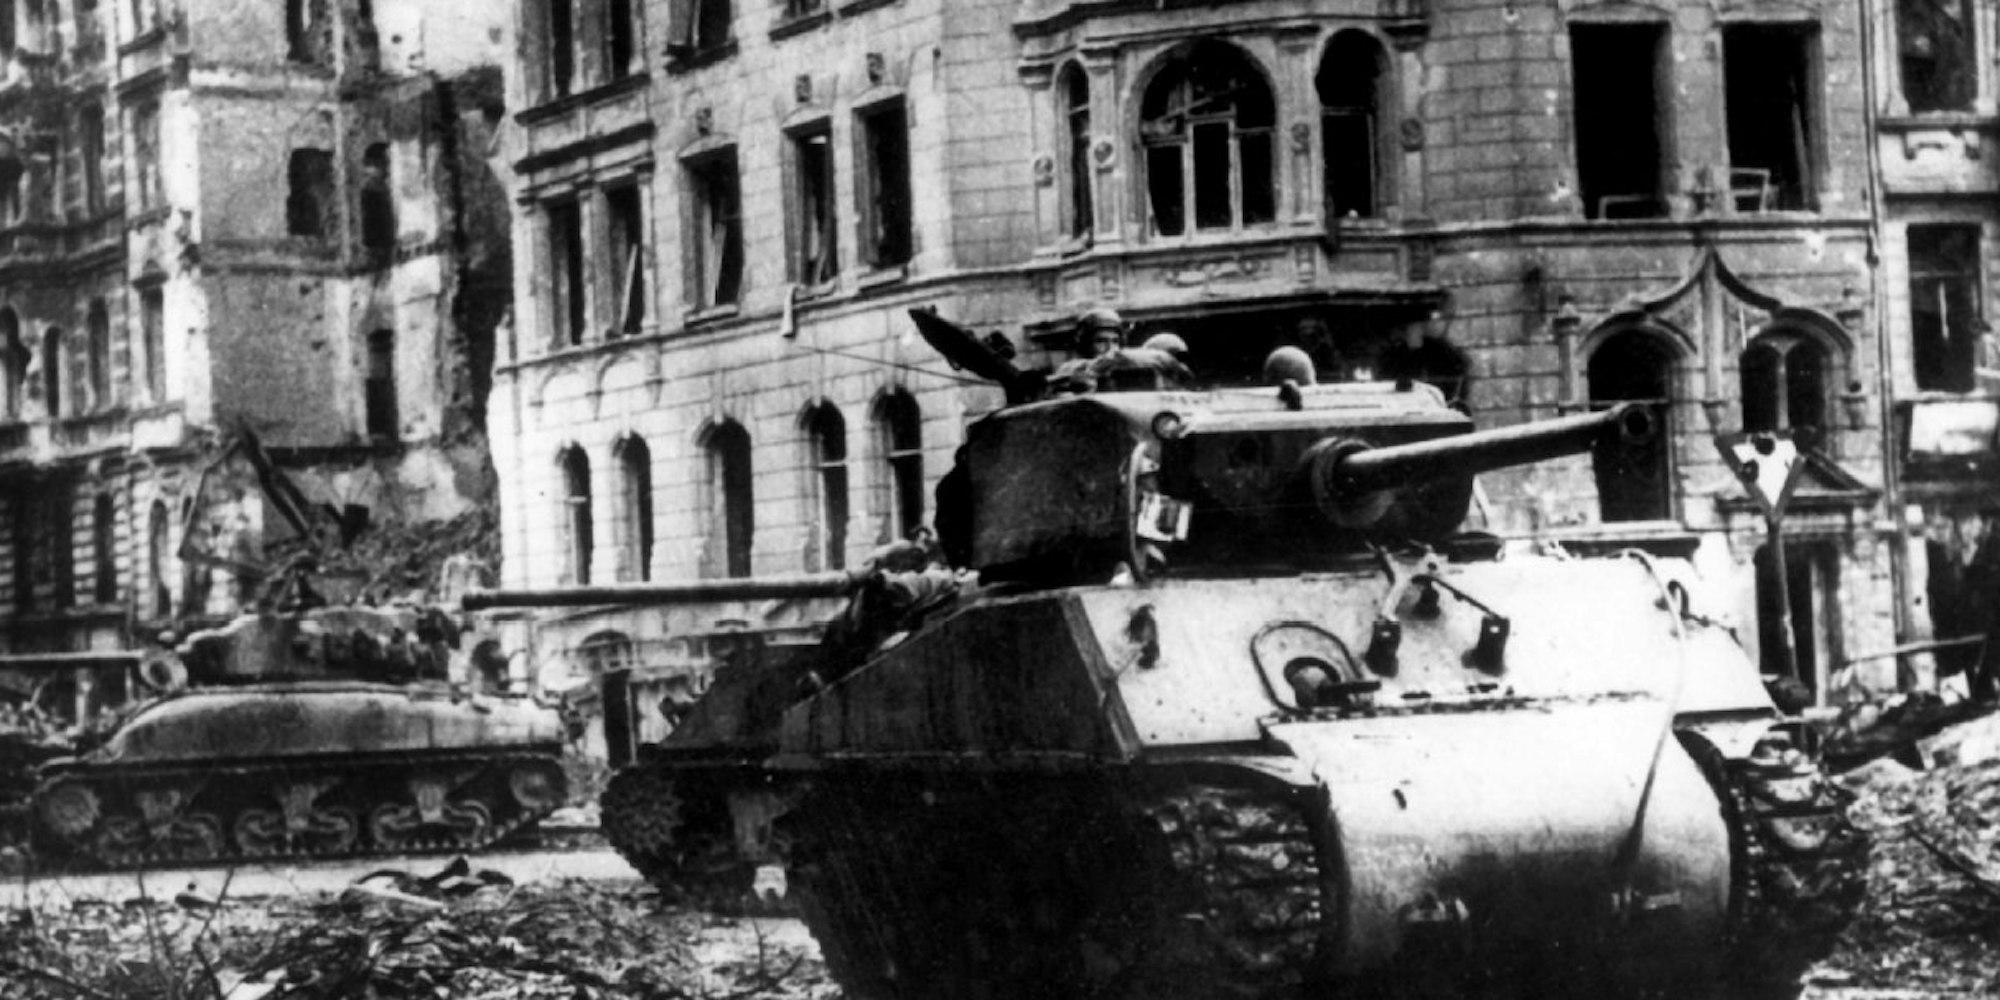 Amerikanische Truppen marschieren am 06.03.1945 in die Domstadt Köln ein.